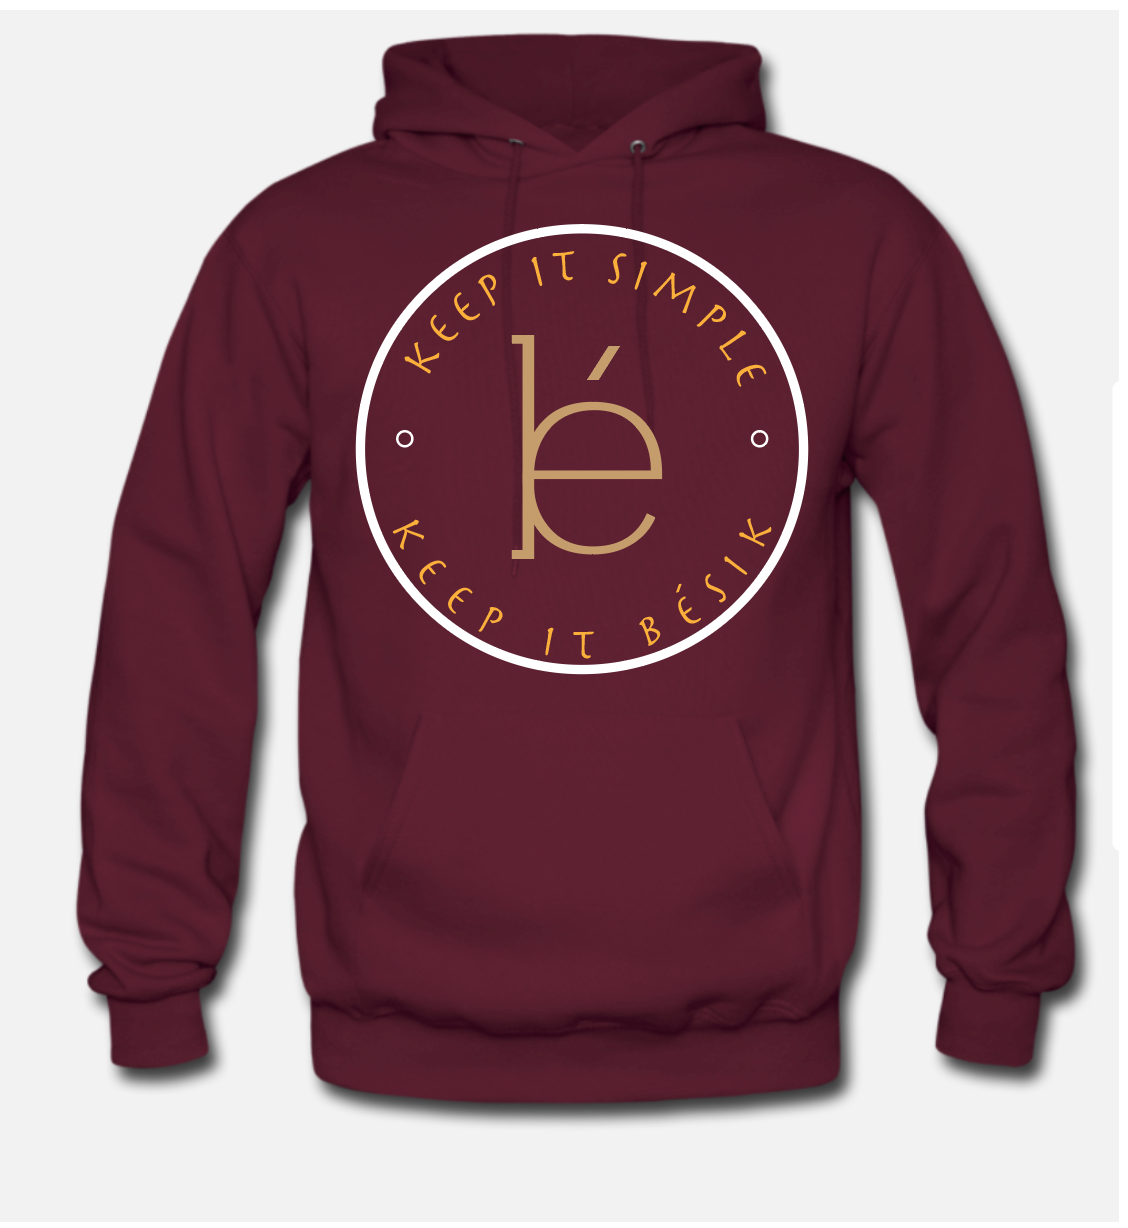 keep it simple keep it bésik burgundy hoodie